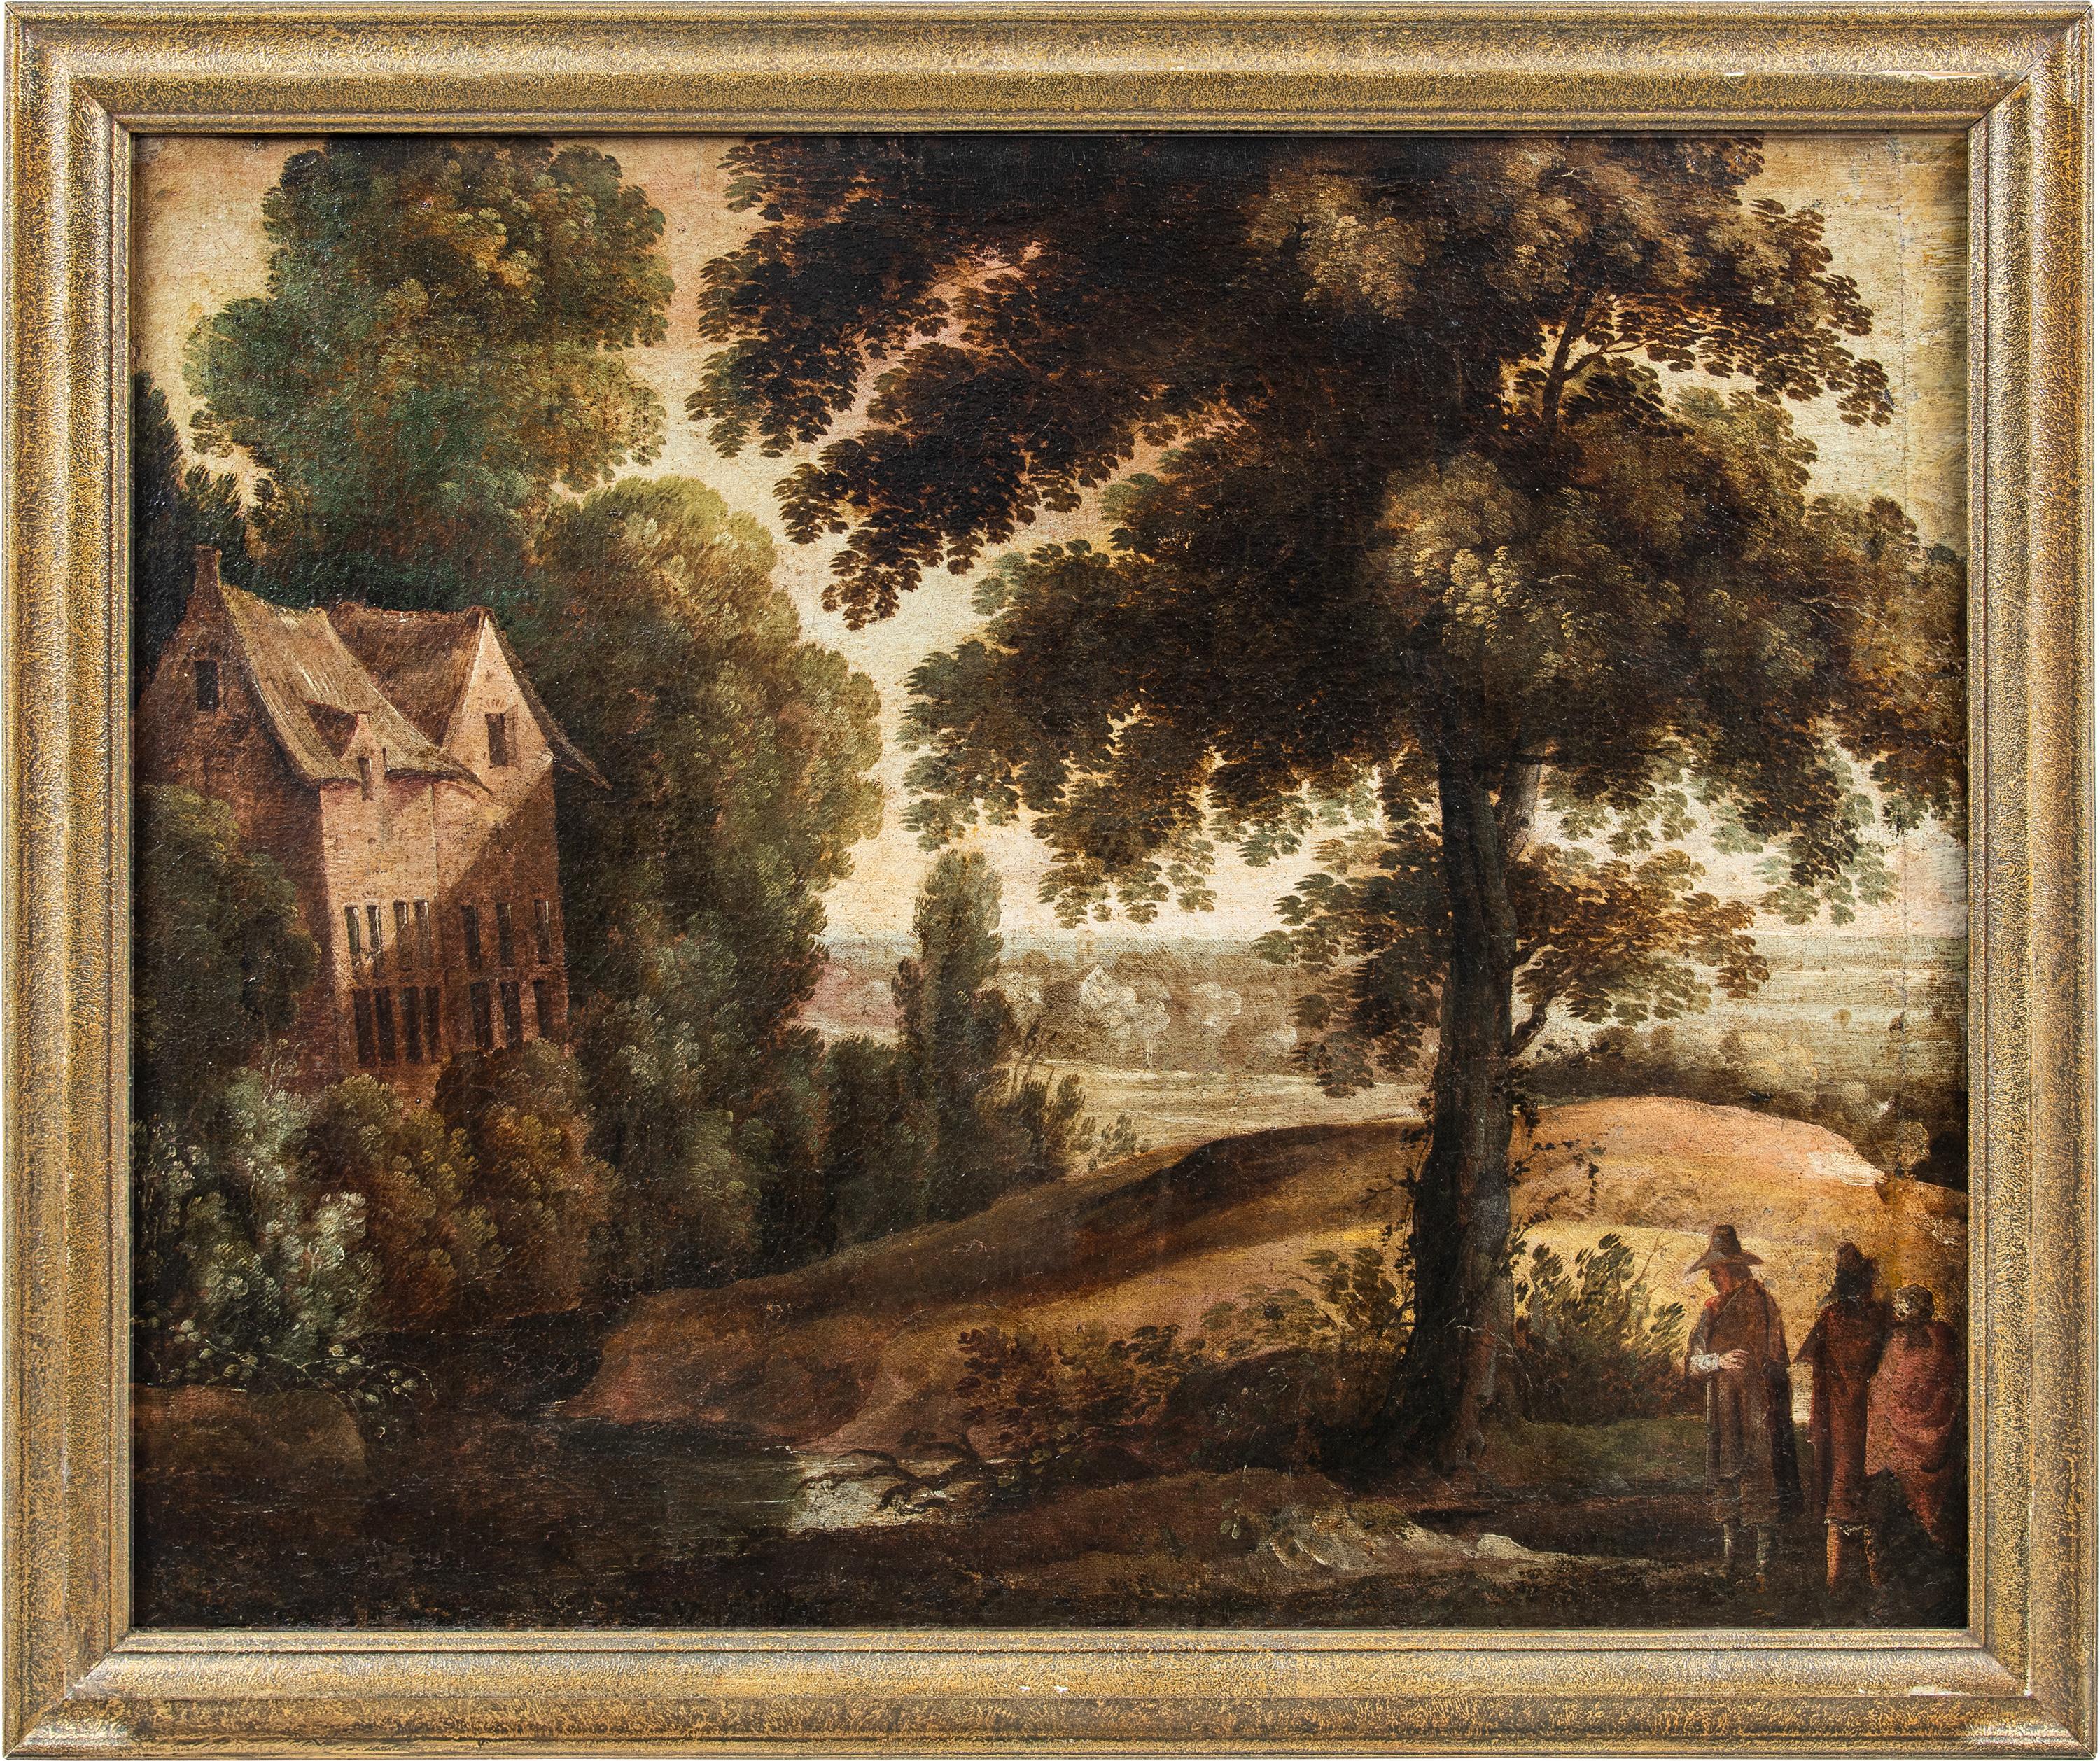 Unknown Landscape Painting - Baroque Flemish painter - 17th century landscape painting - Paul Bril